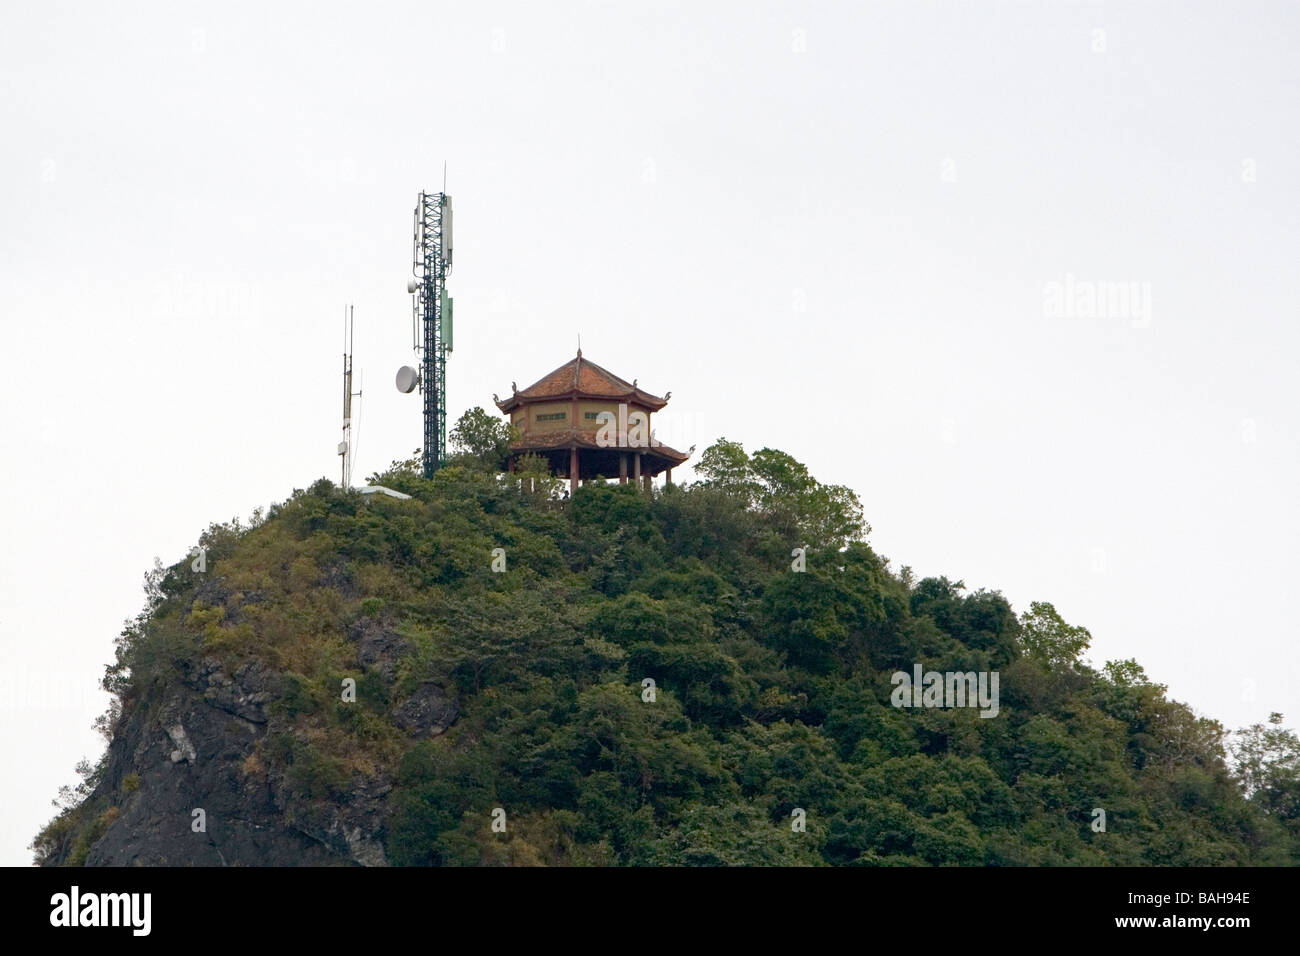 Calcare karast condito con una struttura antica e moderna telefono cellulare torre nella Baia di Ha Long Vietnam Foto Stock